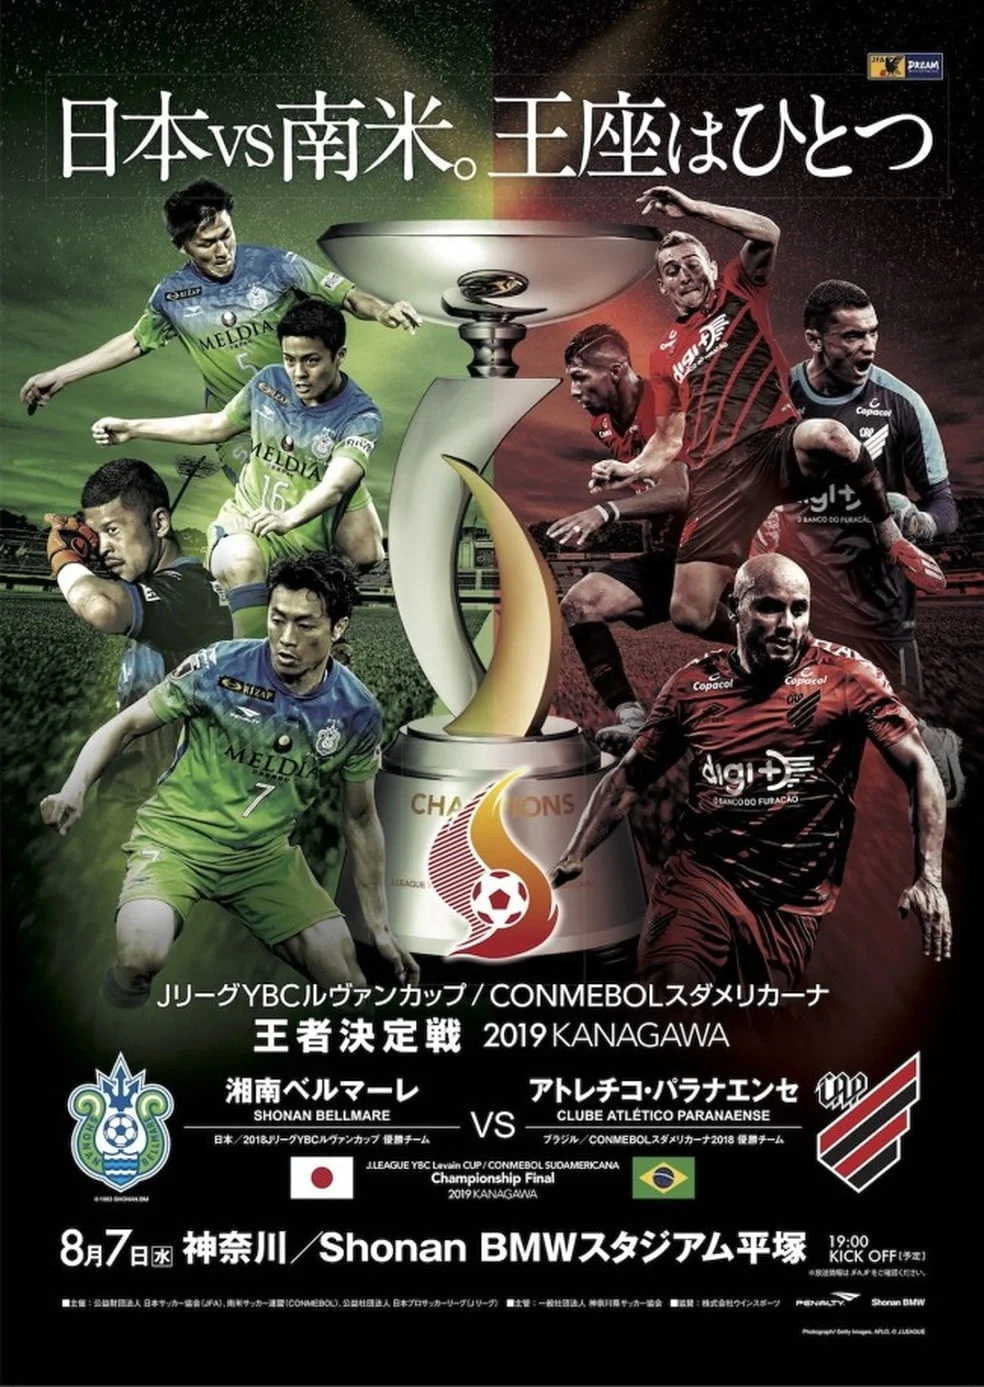 Guia da J-League 2017, Blog Futebol no Japão